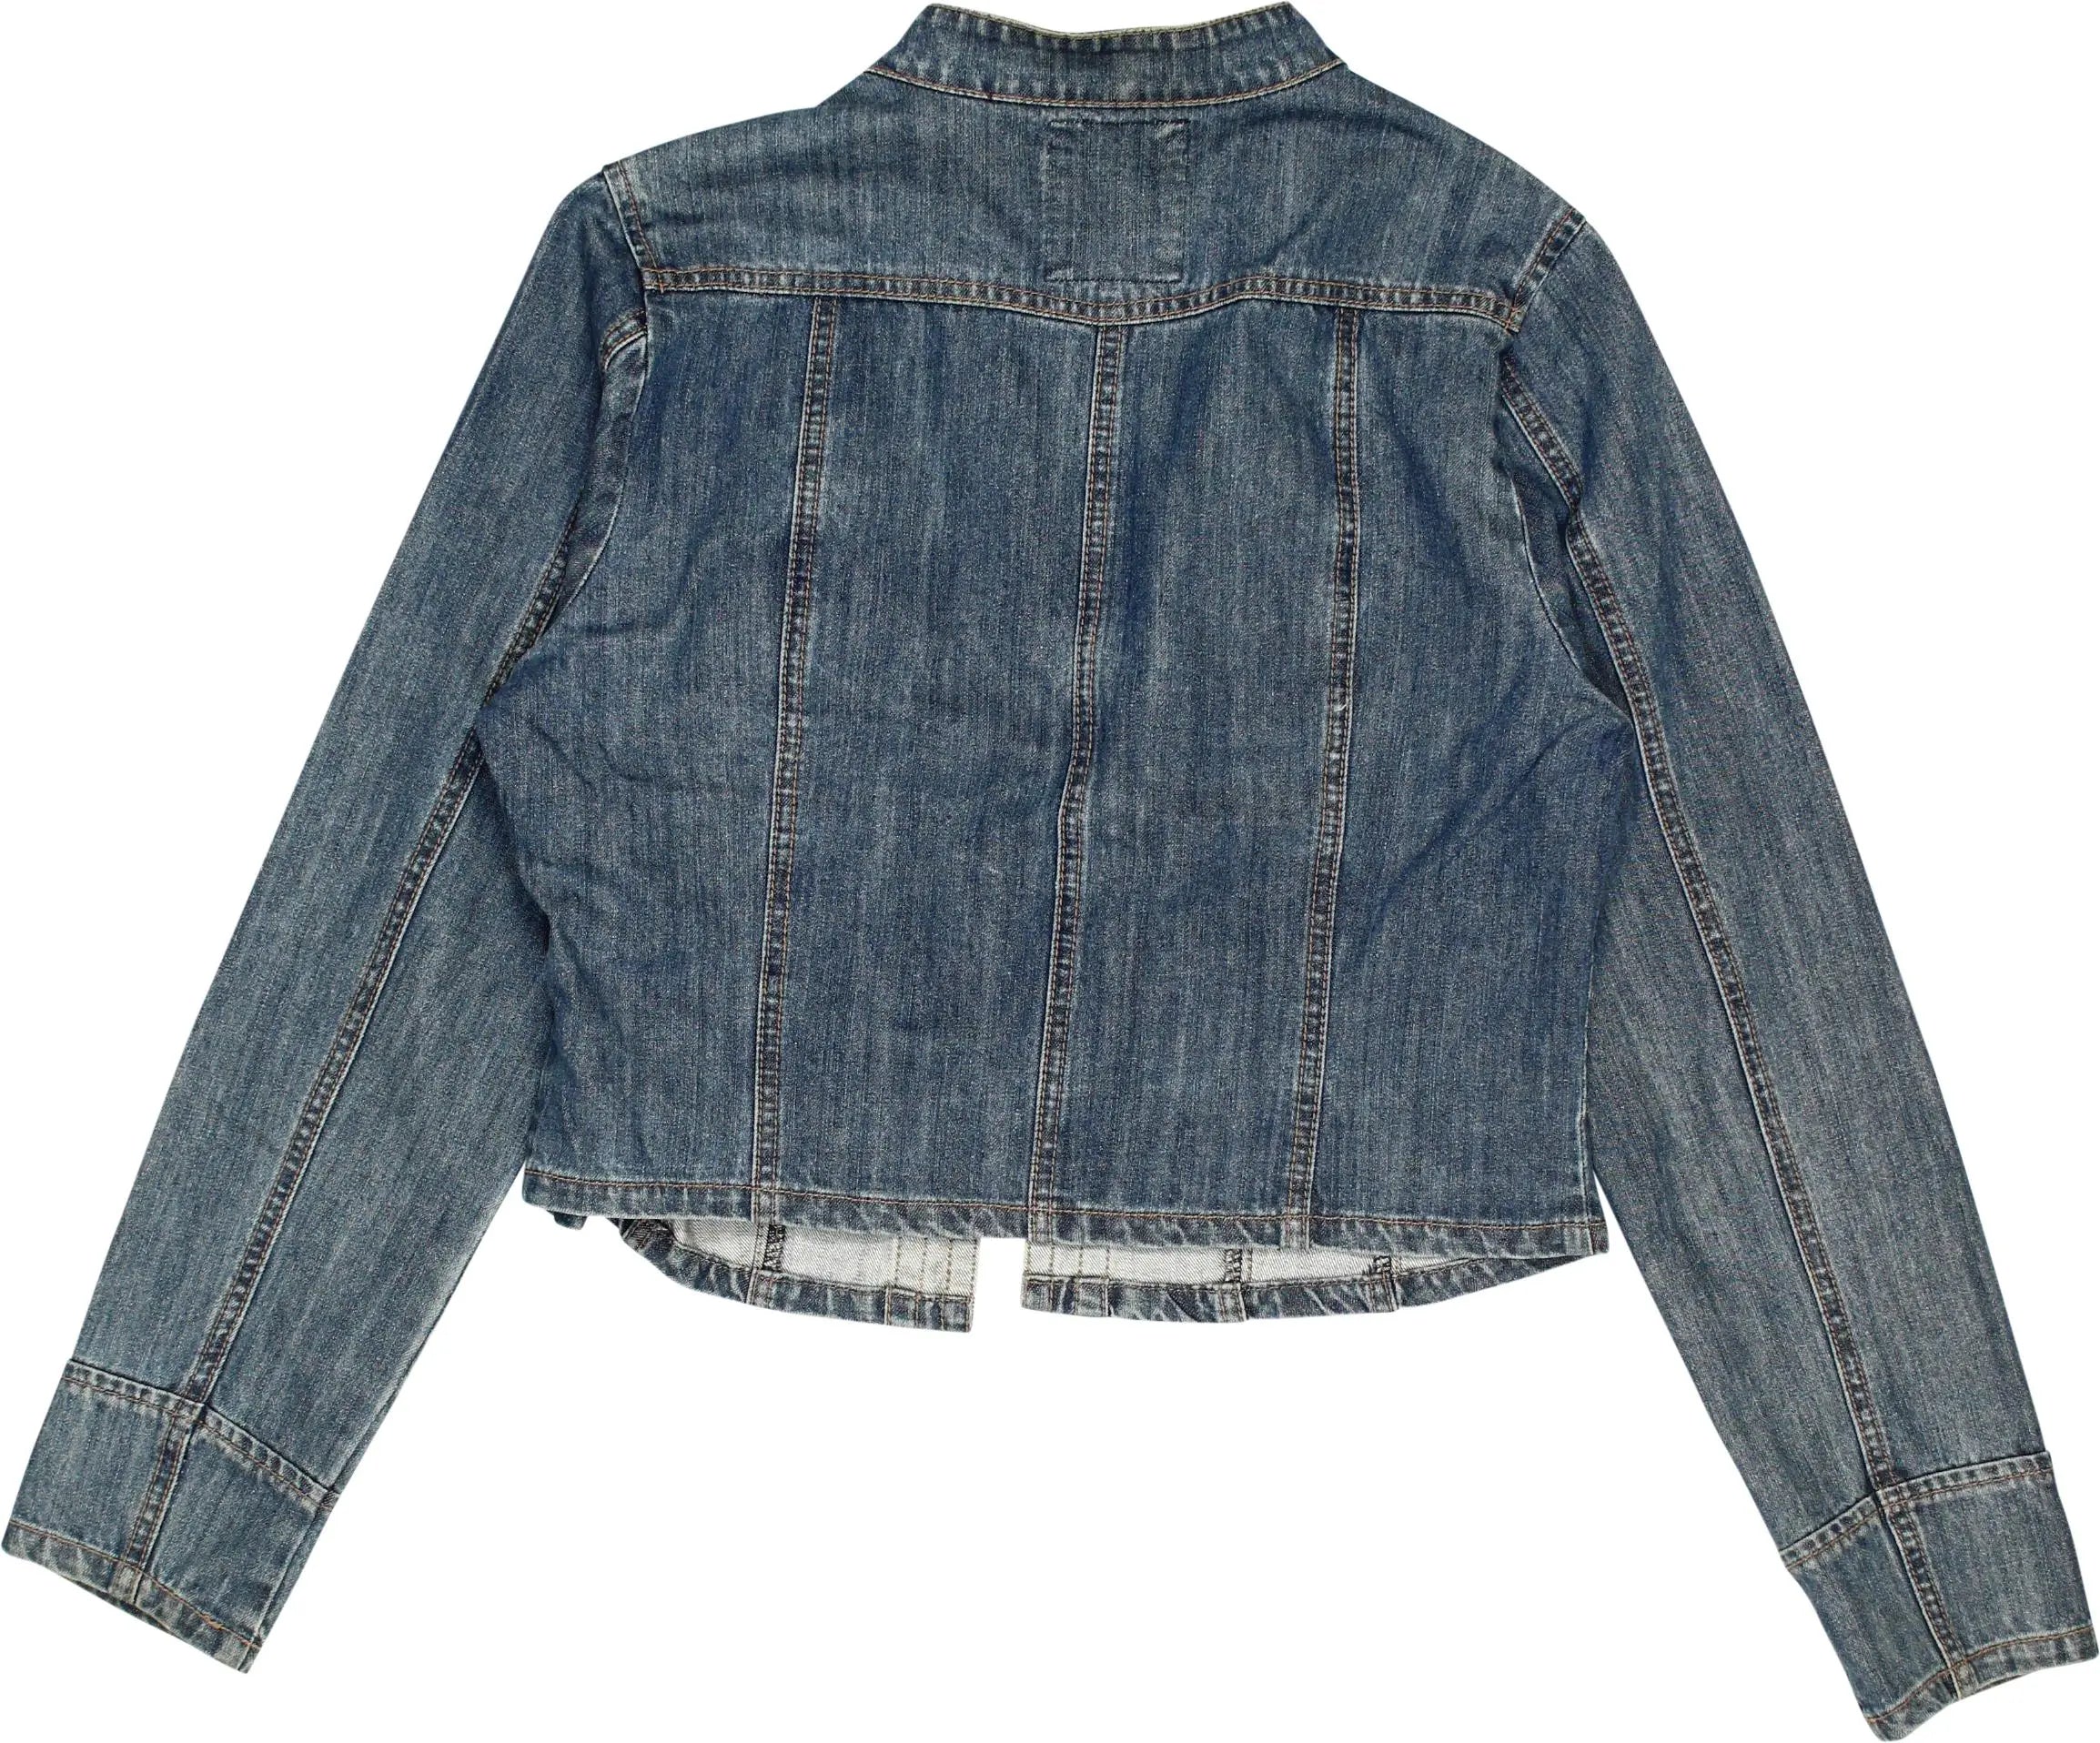 Dept - Denim Jacket- ThriftTale.com - Vintage and second handclothing